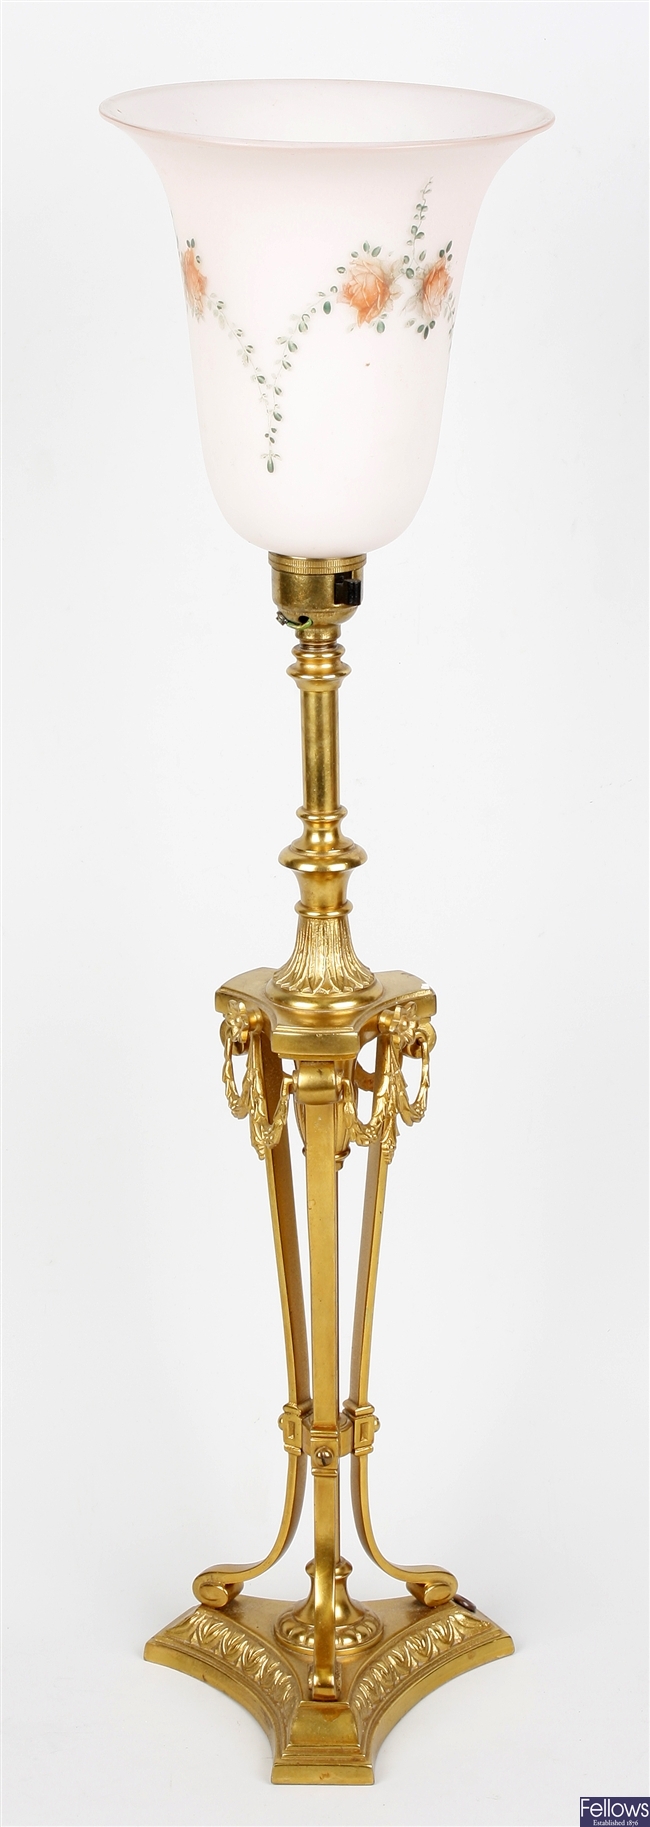 An early 20th century ormolu table lamp